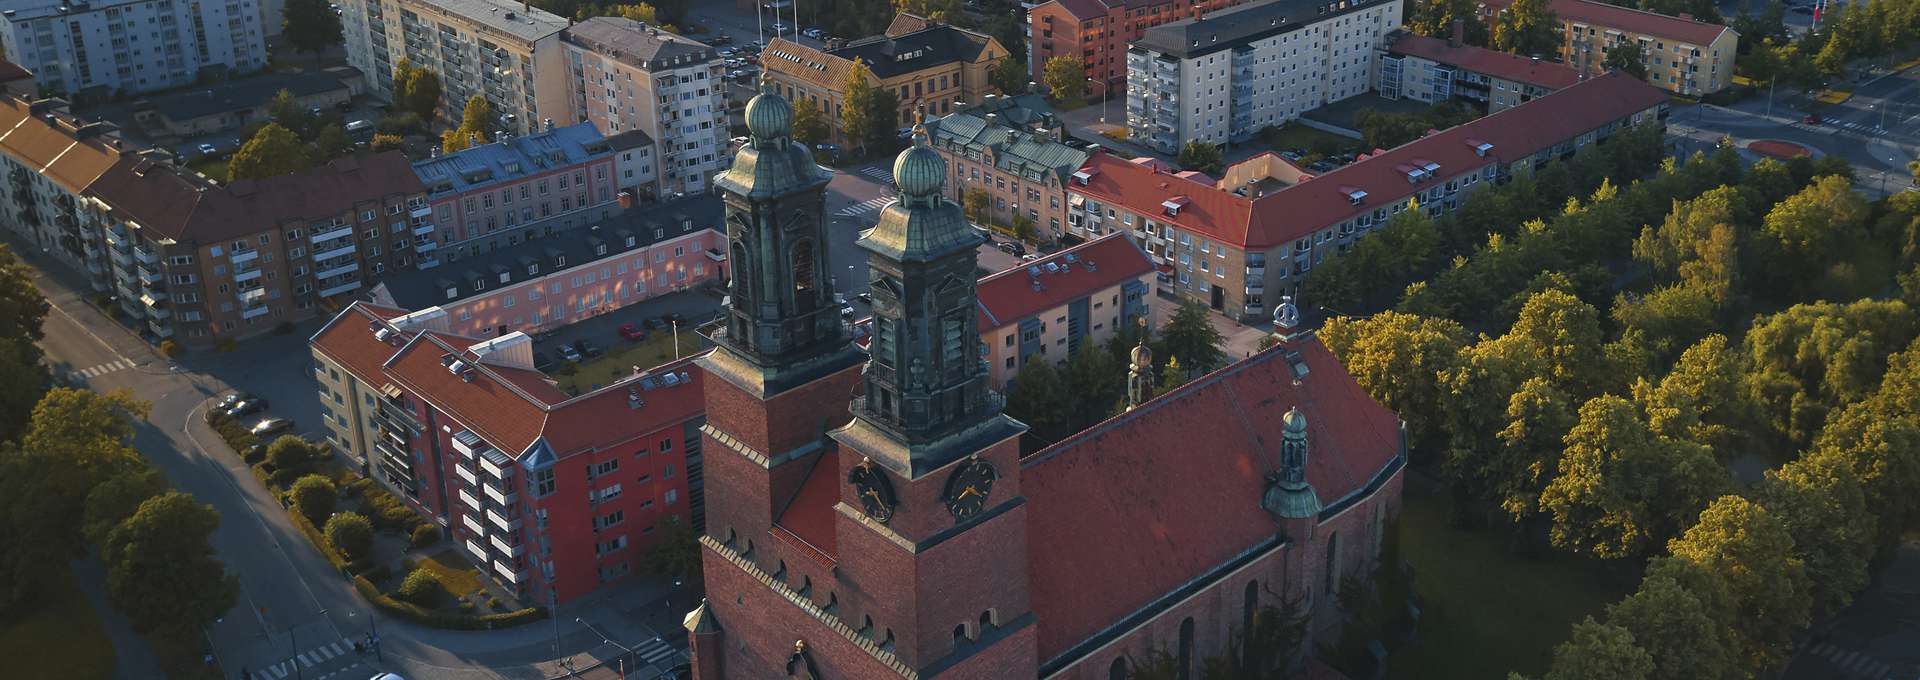 Stor kyrka med två torn i tegel